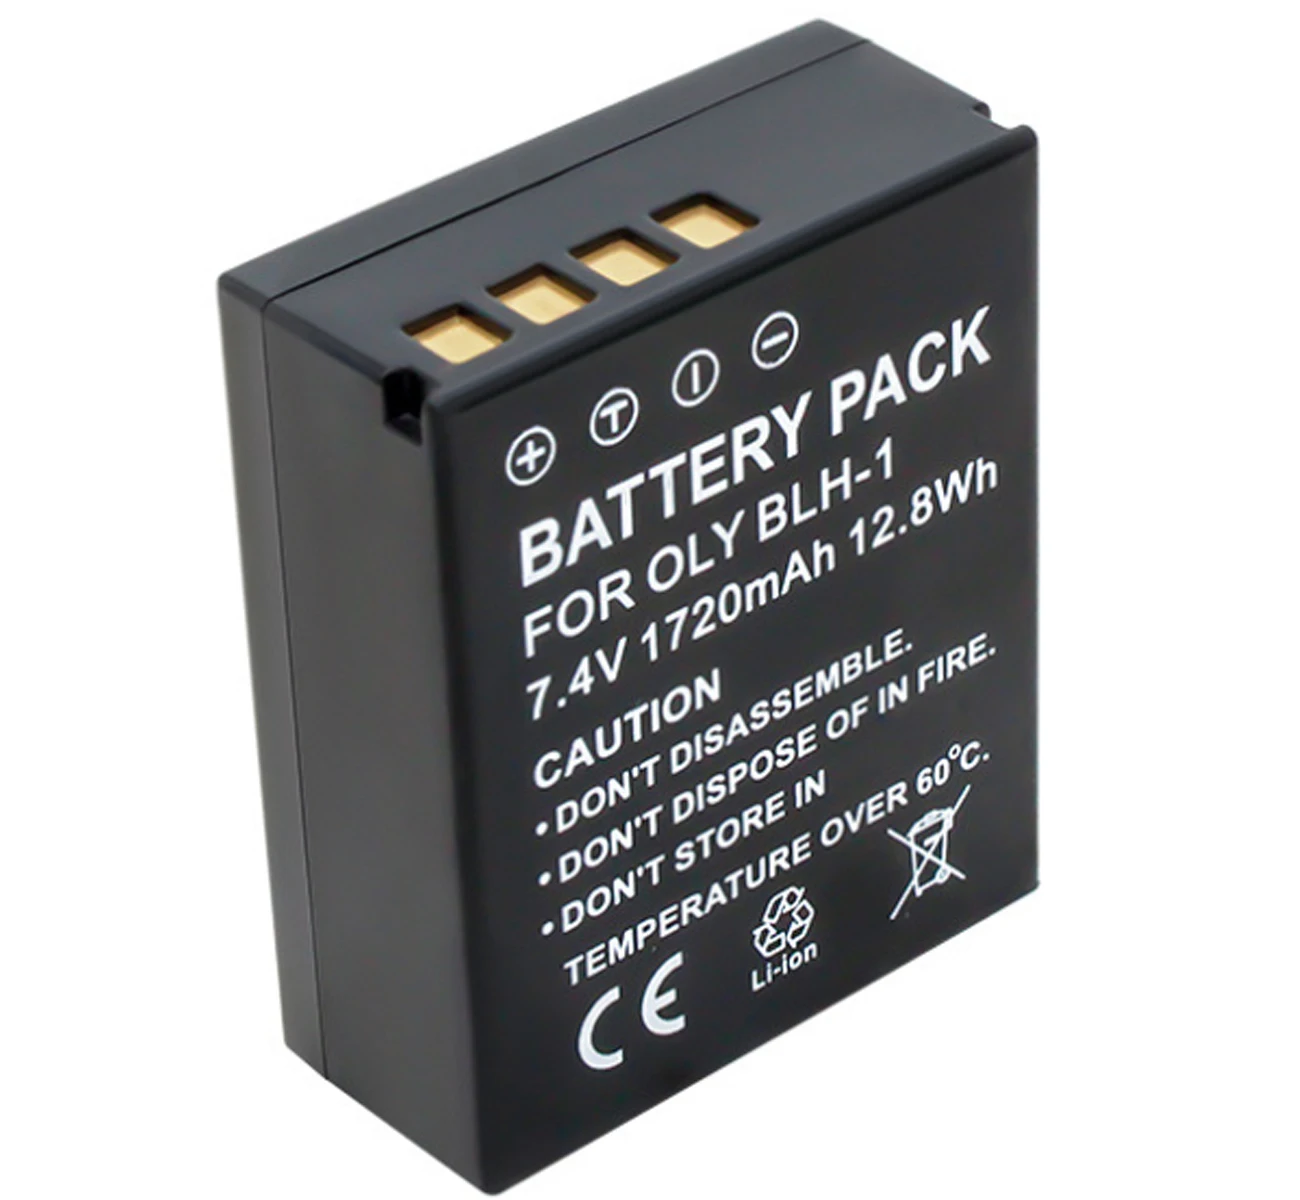 Paquete de batería para cámara Digital Olympus BLH-1, BLH1, BCH-1, OM-D, E-M1X, OMD, EM1X, OM-D, Mark II, EM1, MarkII